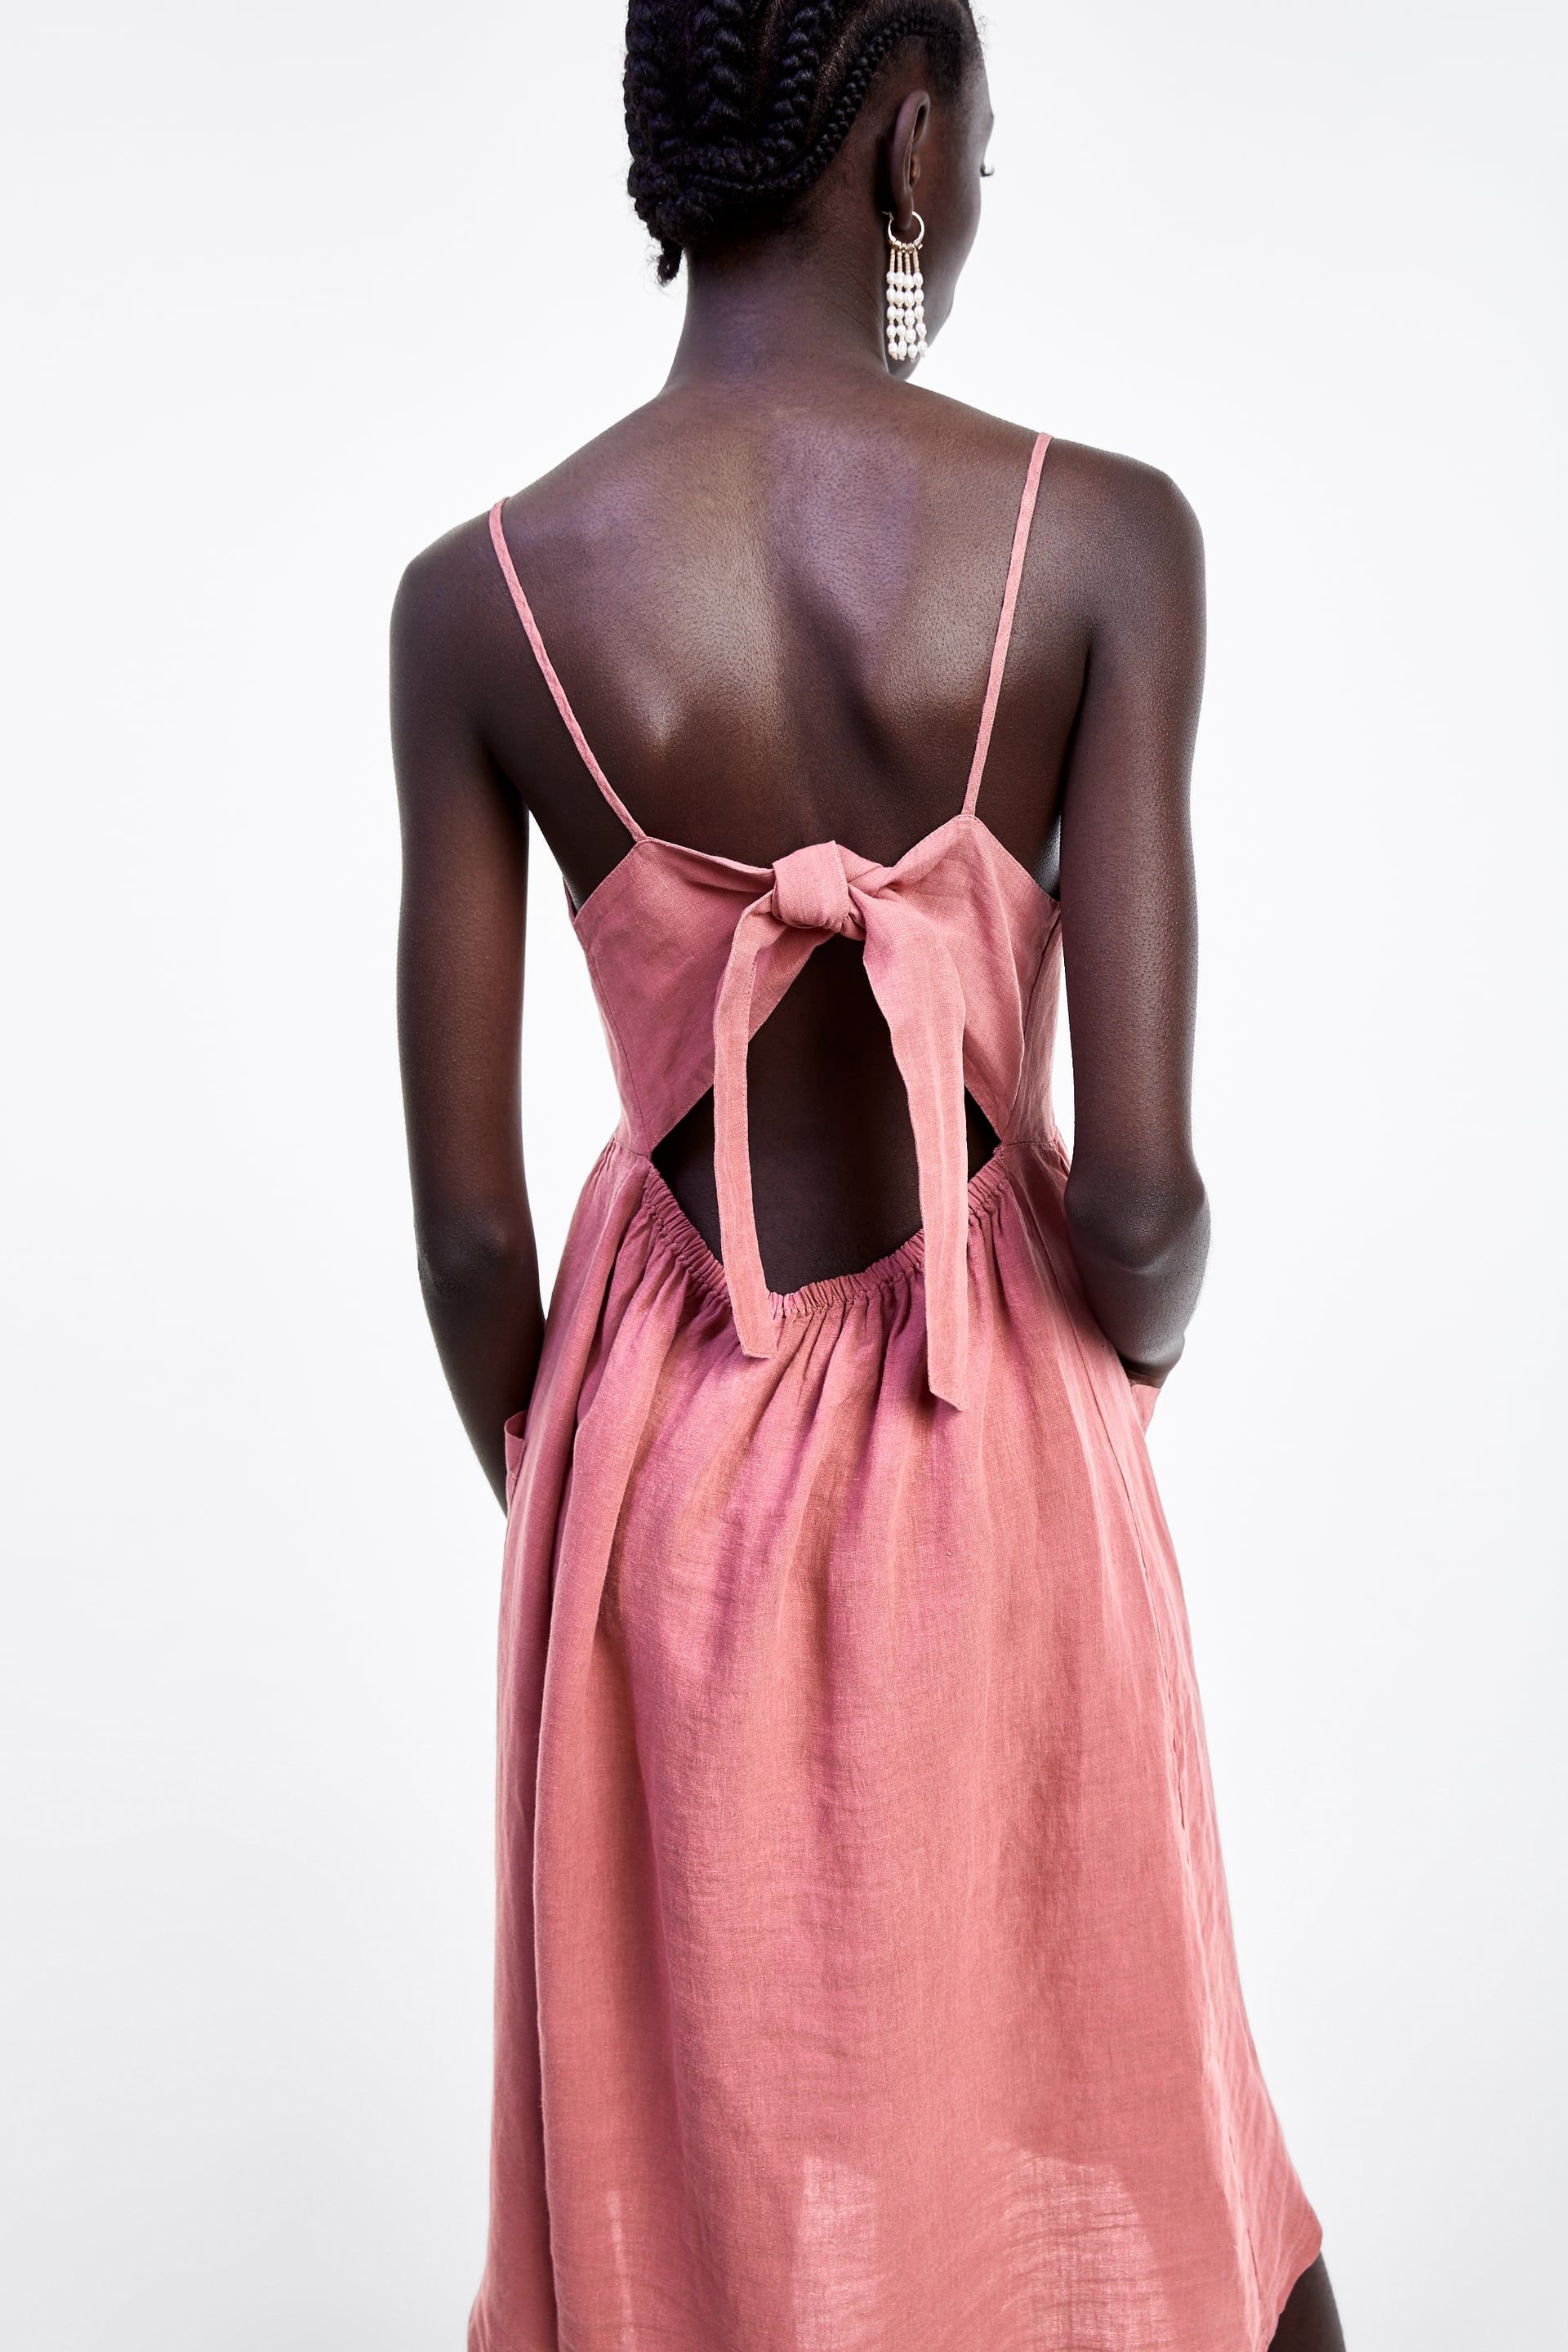 Zara y su vestido rosa de lino que favorece a todas las pieles